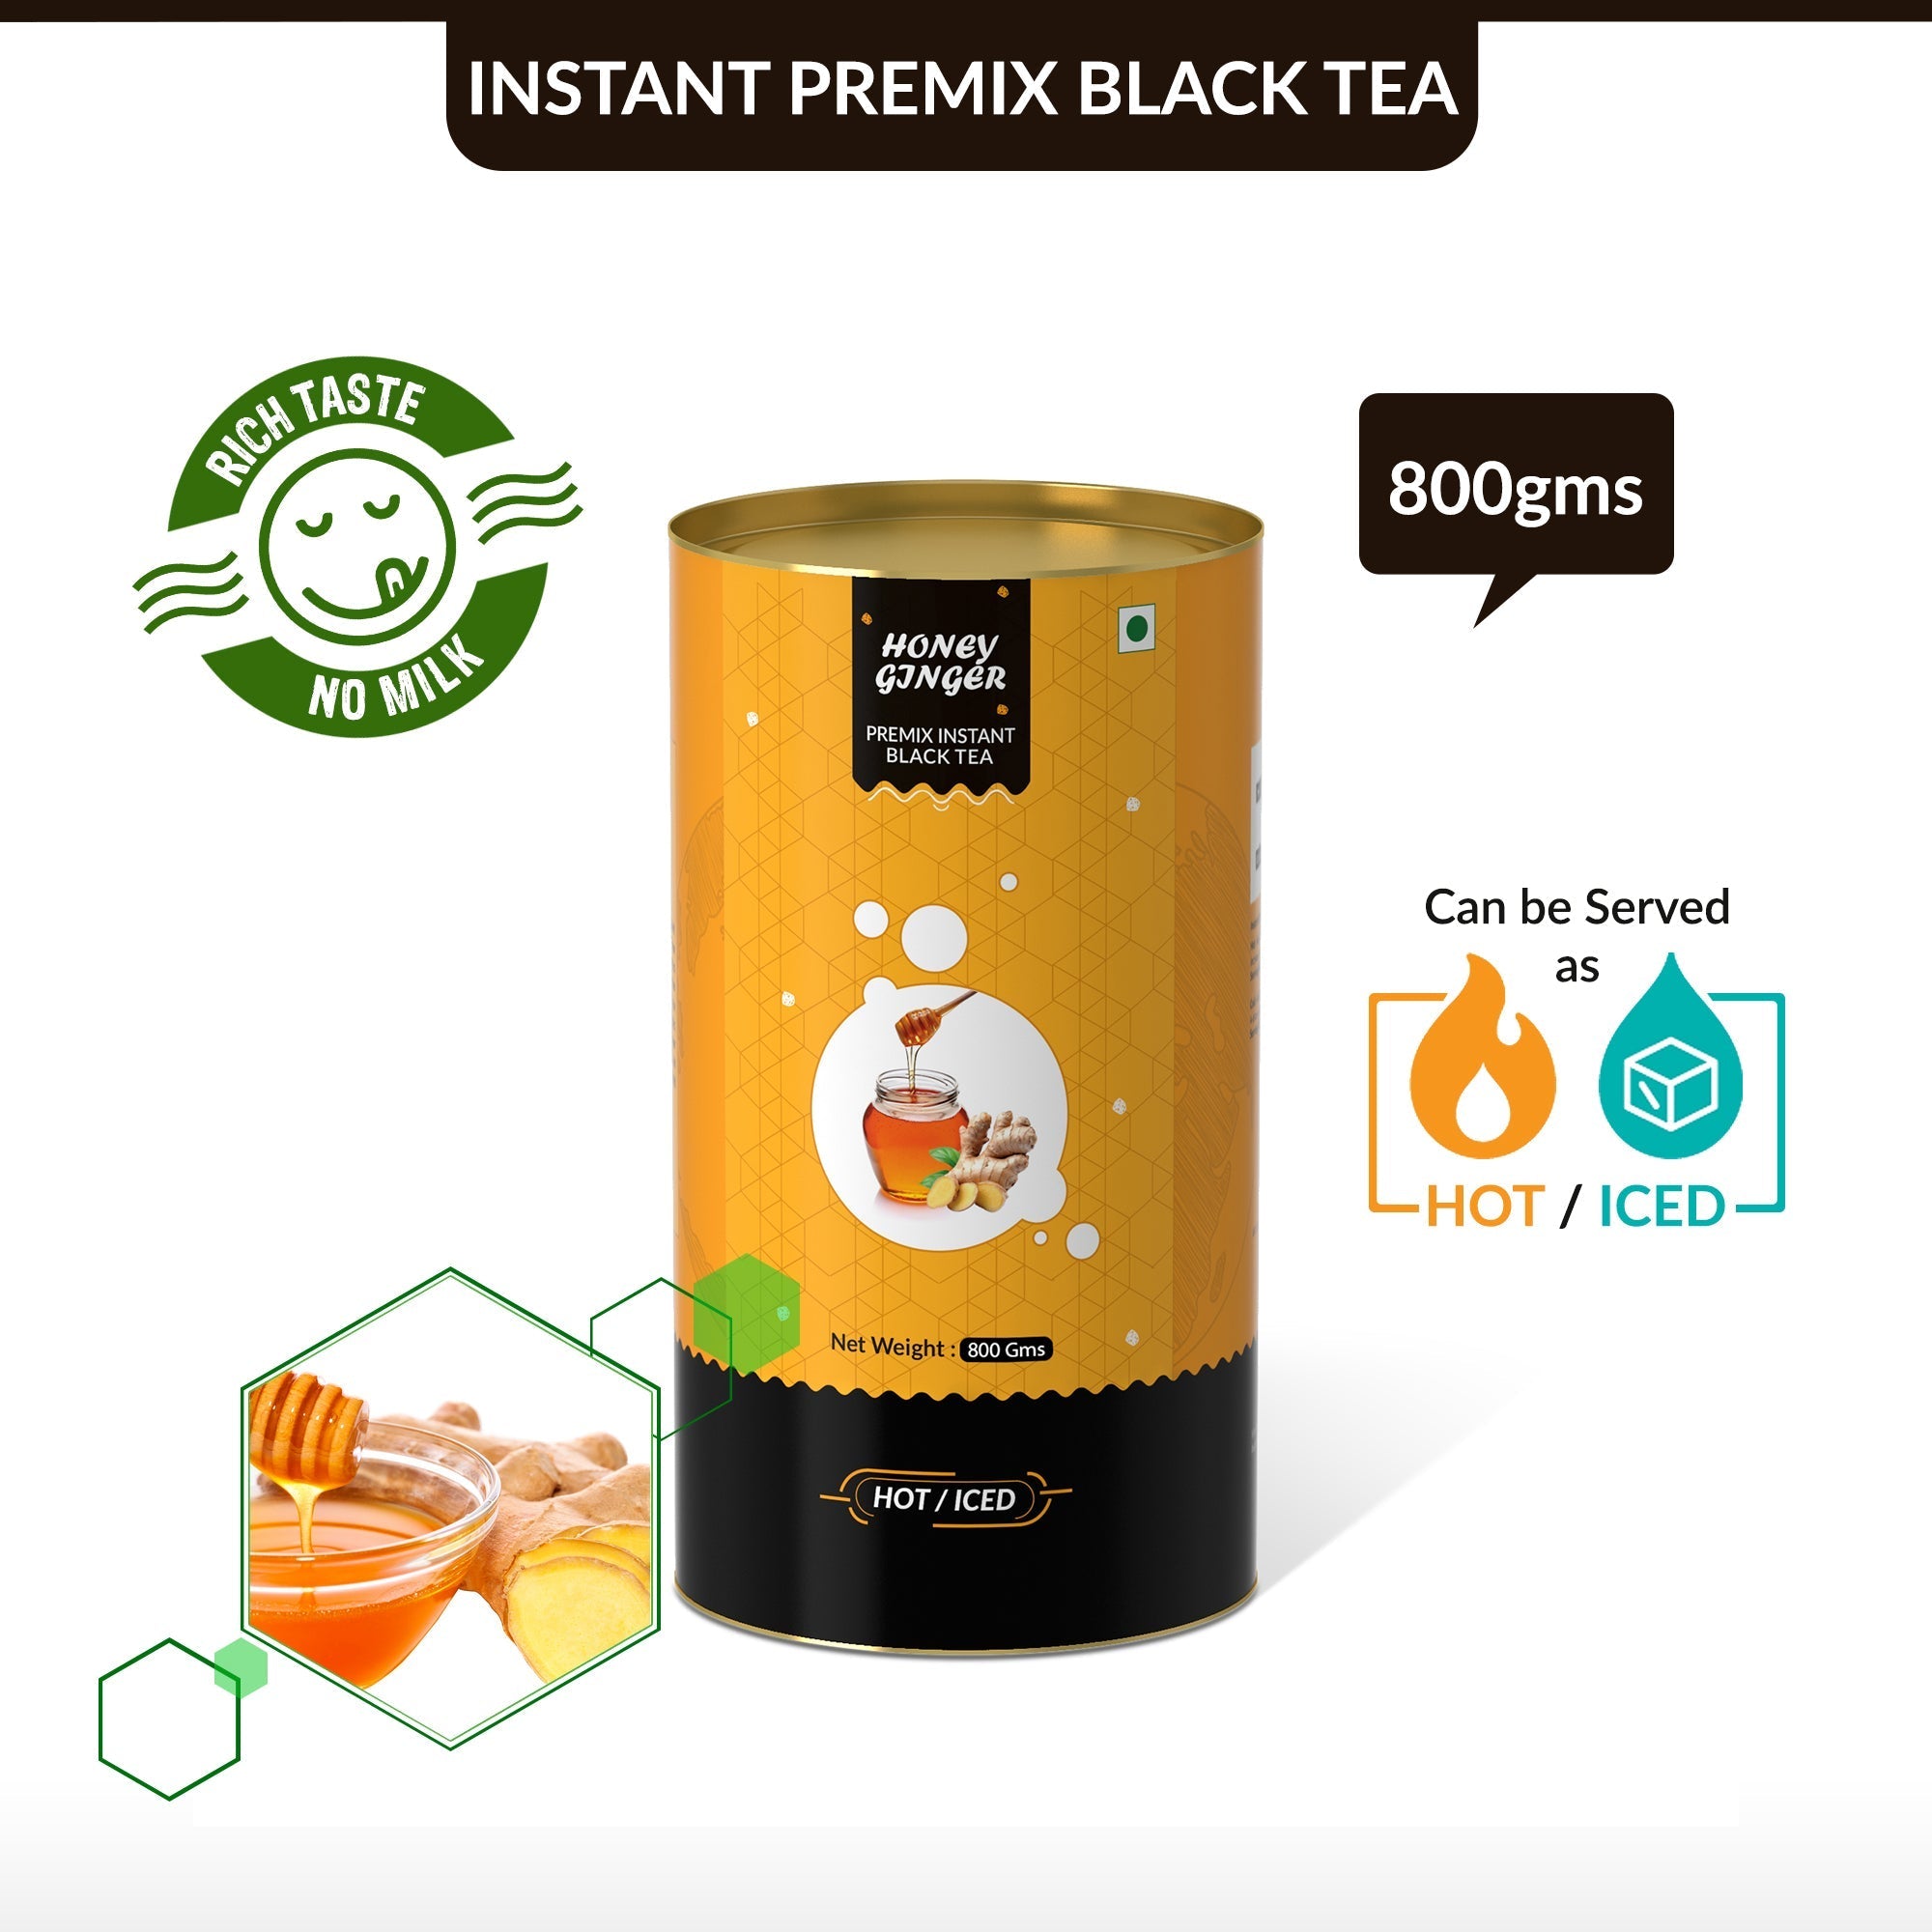 Honey Ginger Flavored Instant Black Tea - 400 gms